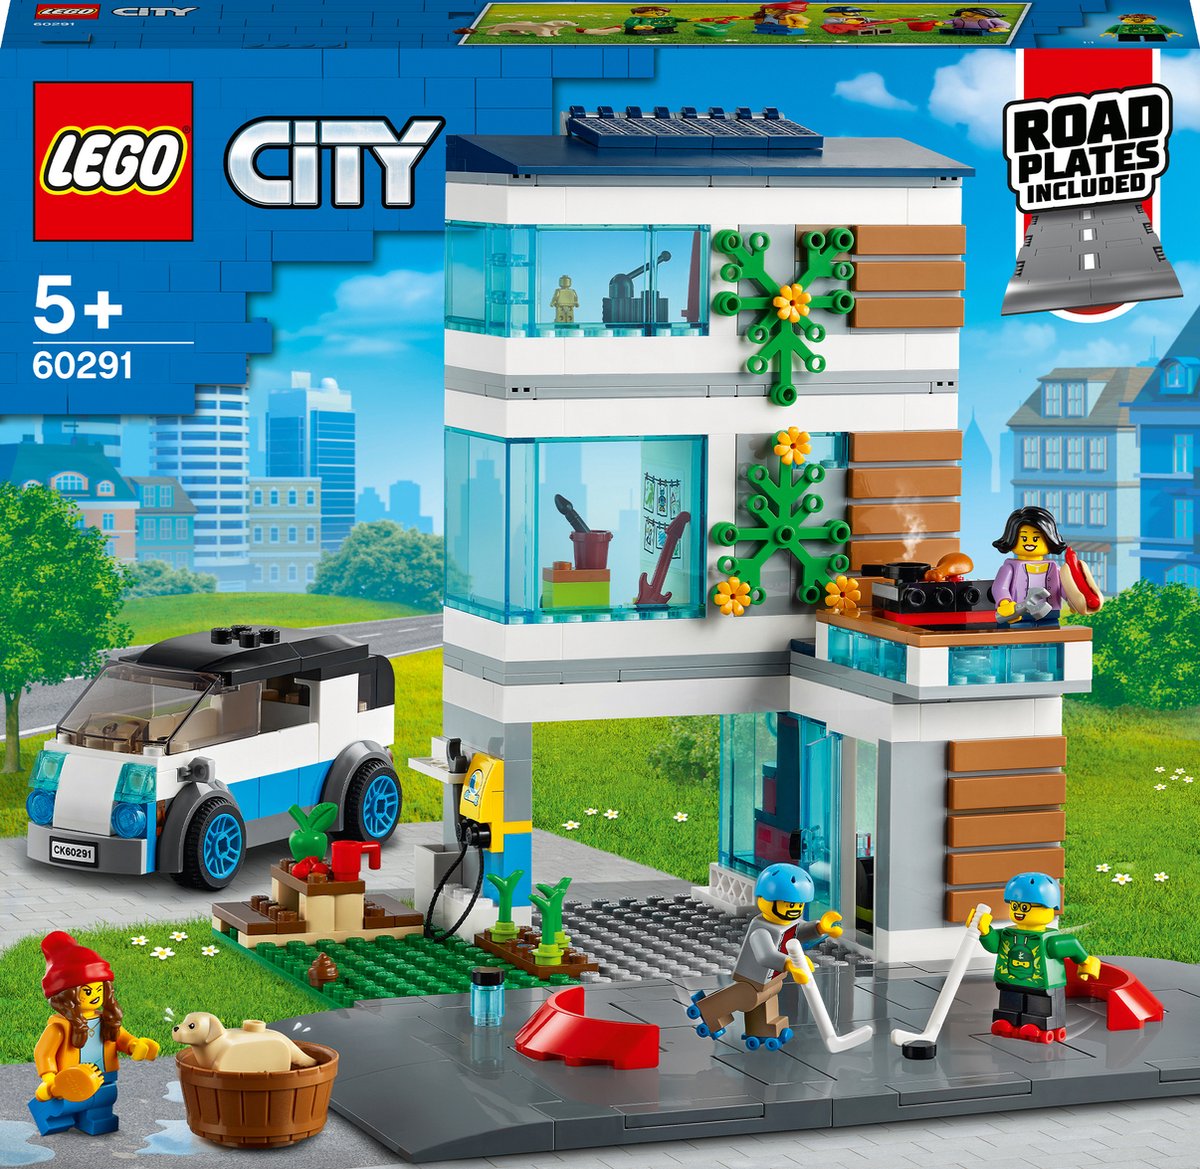 Jouets maison familiale et voiture électrique LEGO City - 60398